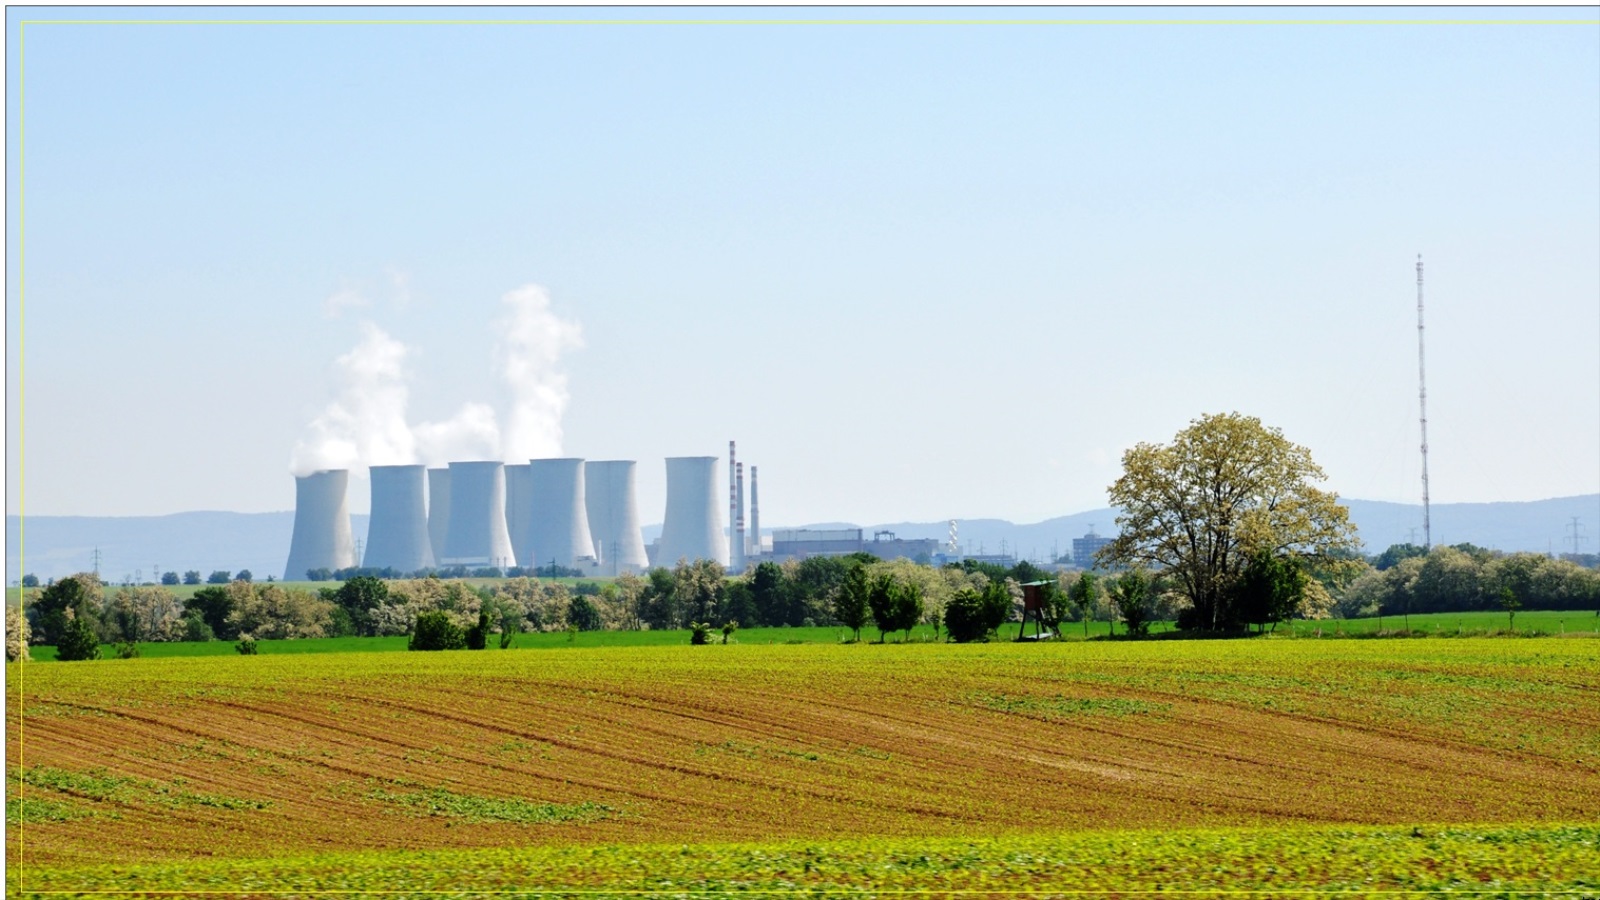  محطة بوهونيس للطاقة النووية في سلوفاكيا (مواقع التواصل)